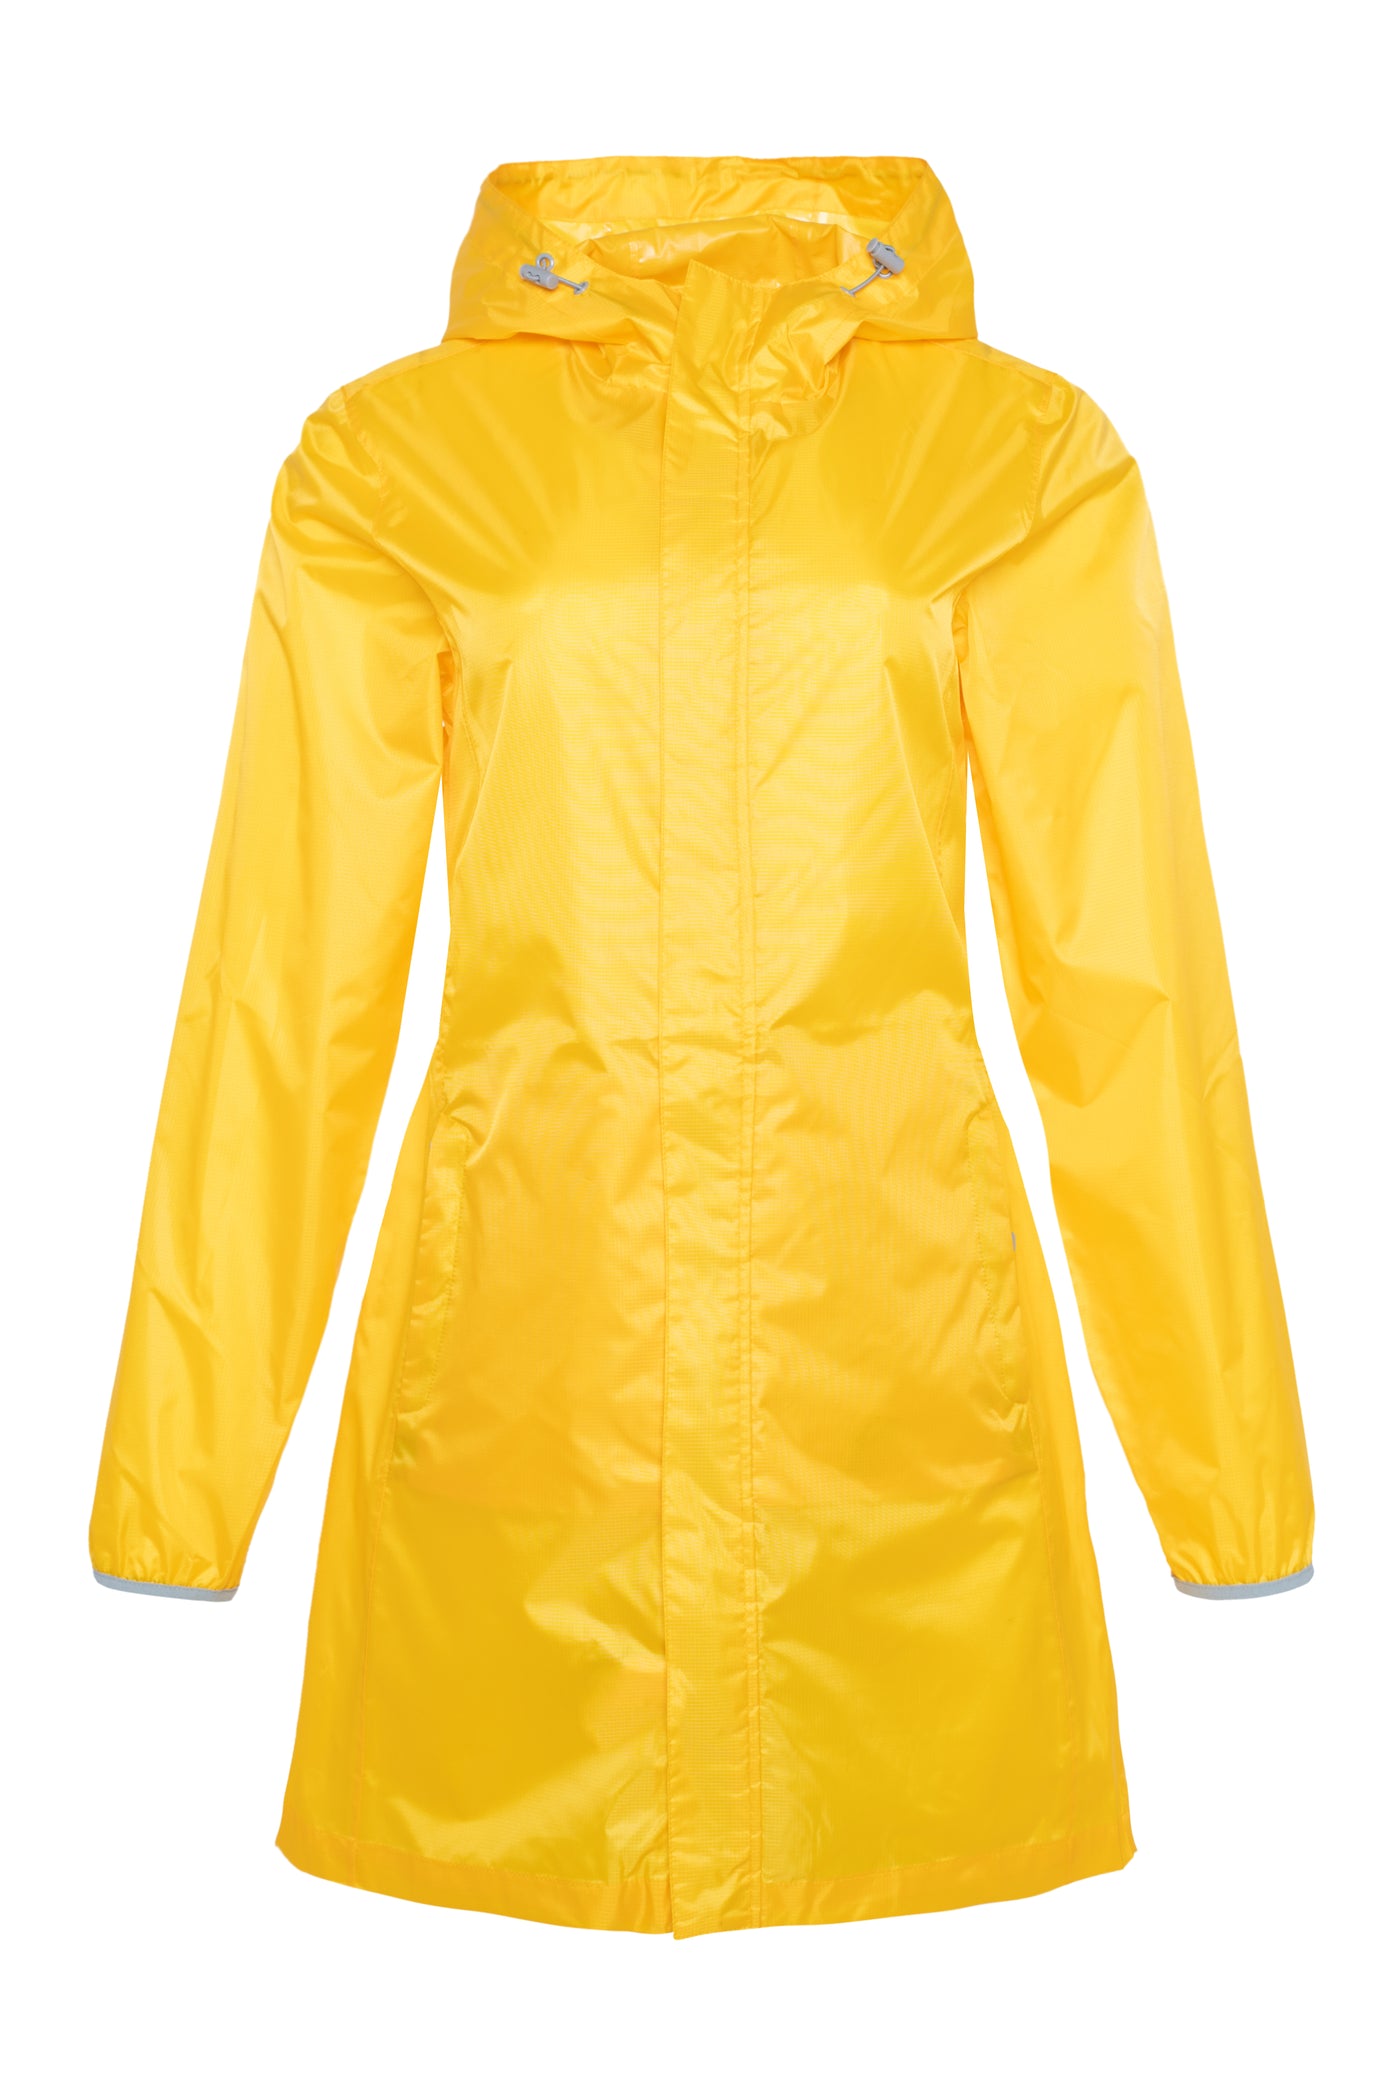 Waterproof long jacket for women